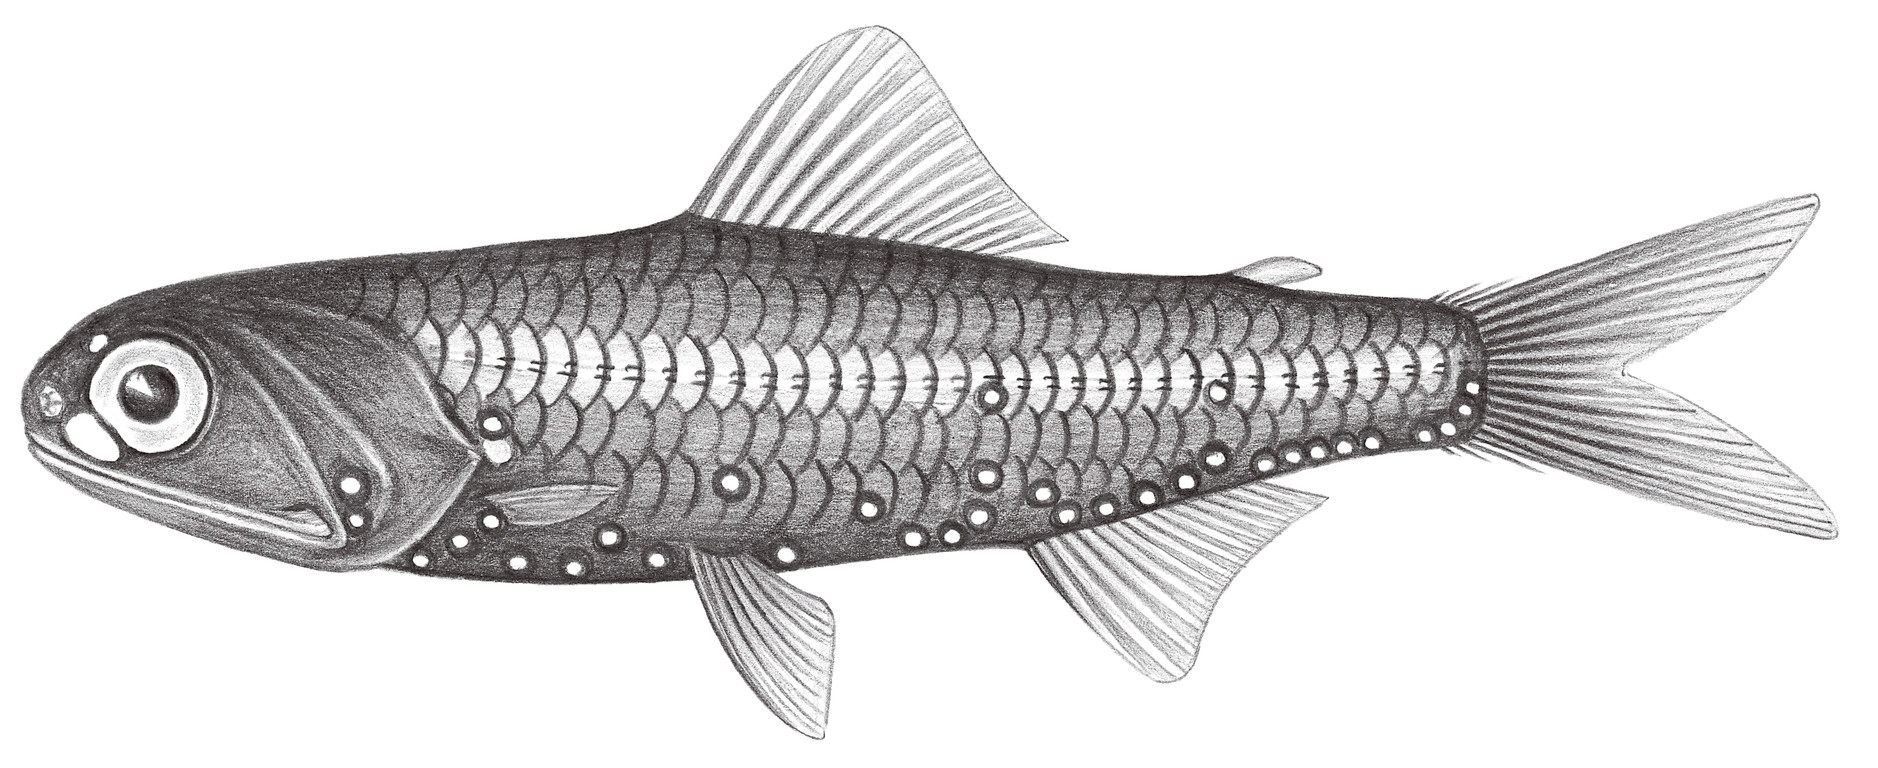 504.	奈氏眶燈魚 Diaphus knappi Nafpaktitis, 1978